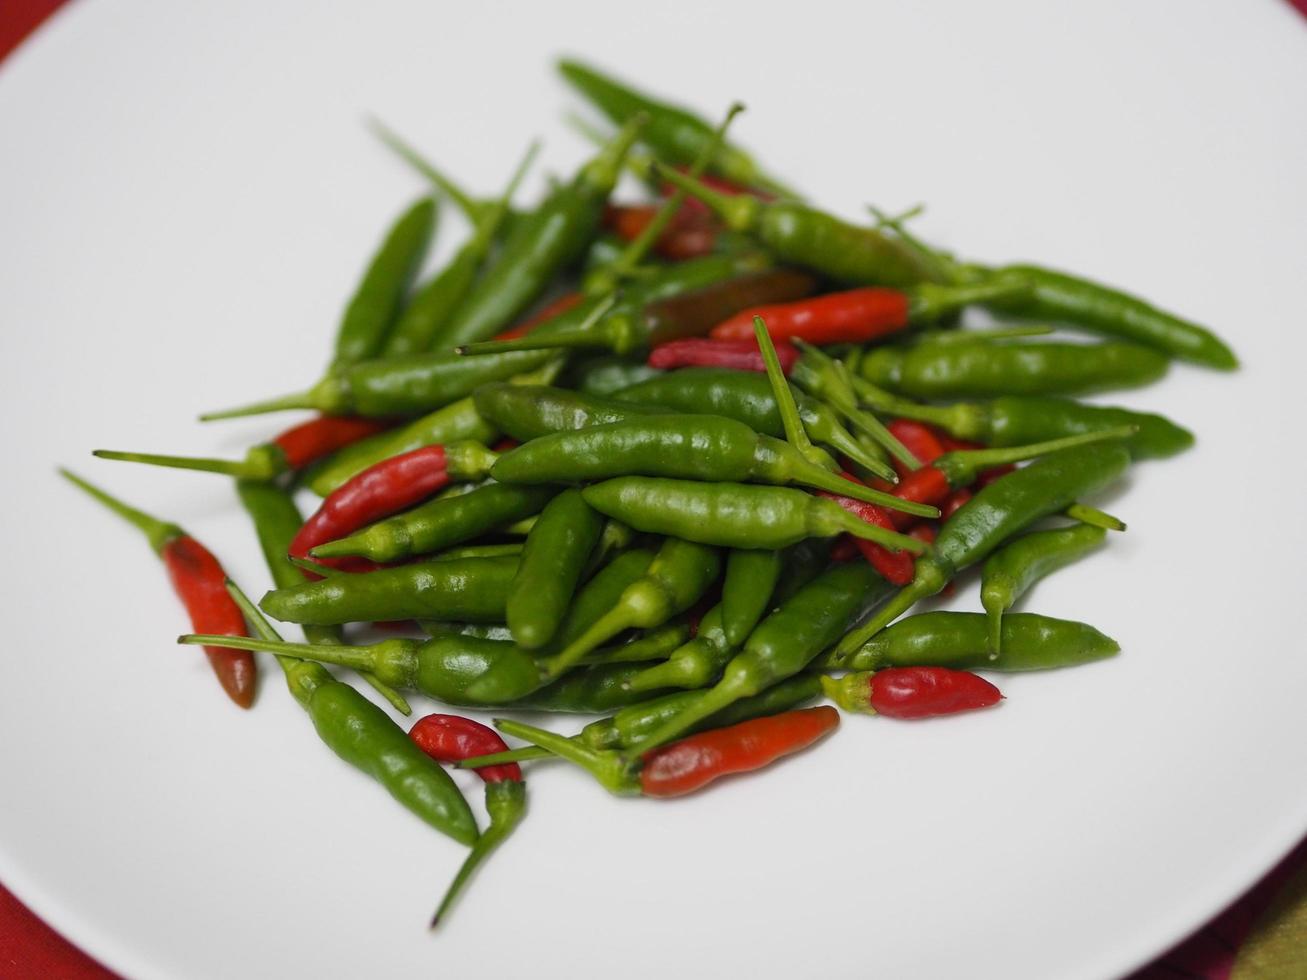 peperone tailandese rosso verde, peperoncino, capsicum annuum freschezza su piatto bianco cibo vegetale foto